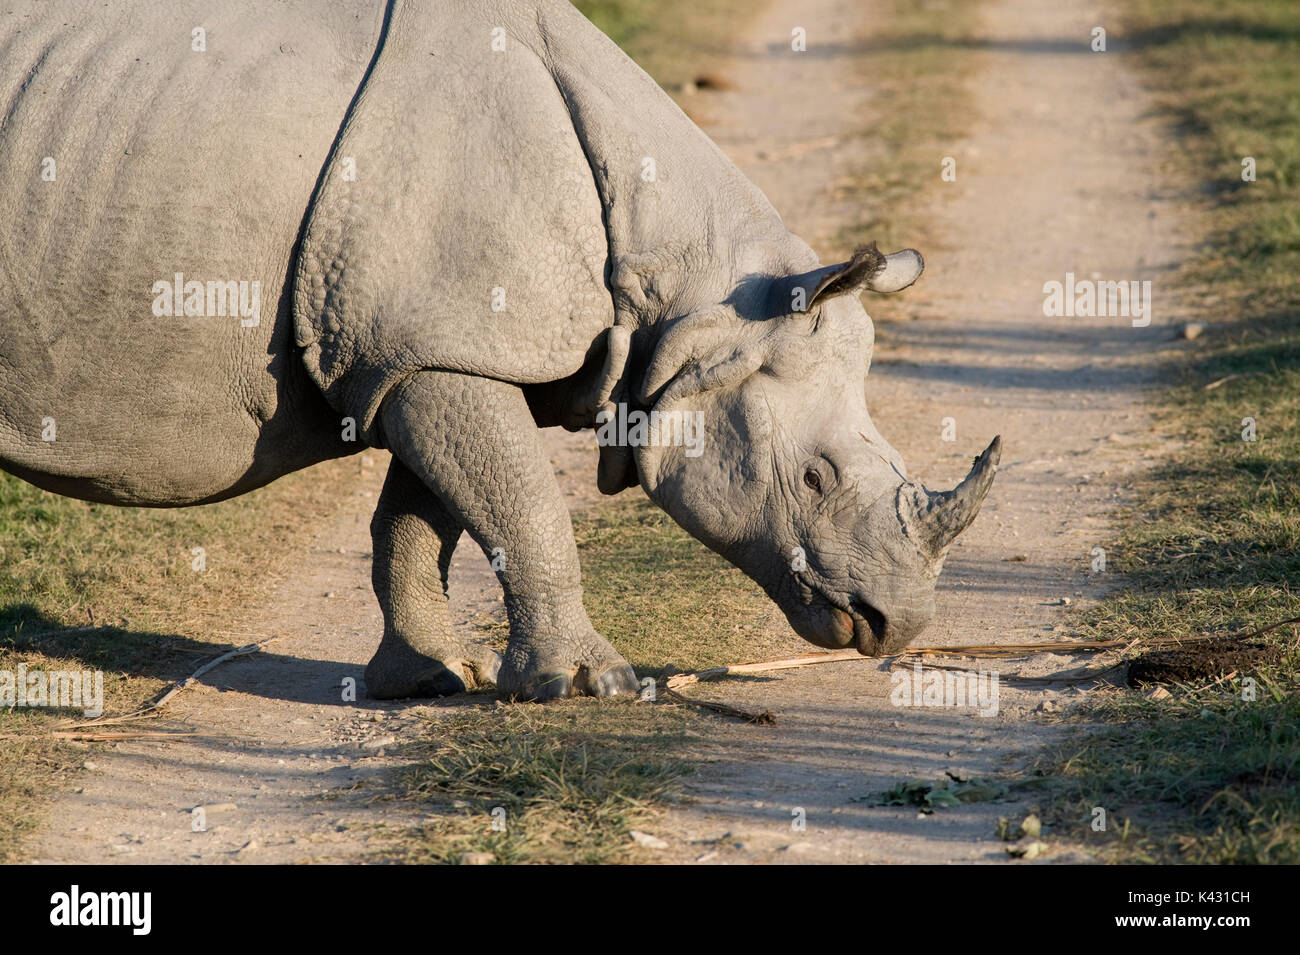 Rhinocéros indien, Rhinoceros unicornis, randonnée pédestre traversant la route, le parc national de Kaziranga, Assam, Inde, patrimoine mondial et l'UICN UICN Catégorie II Site, 2004 fr Banque D'Images